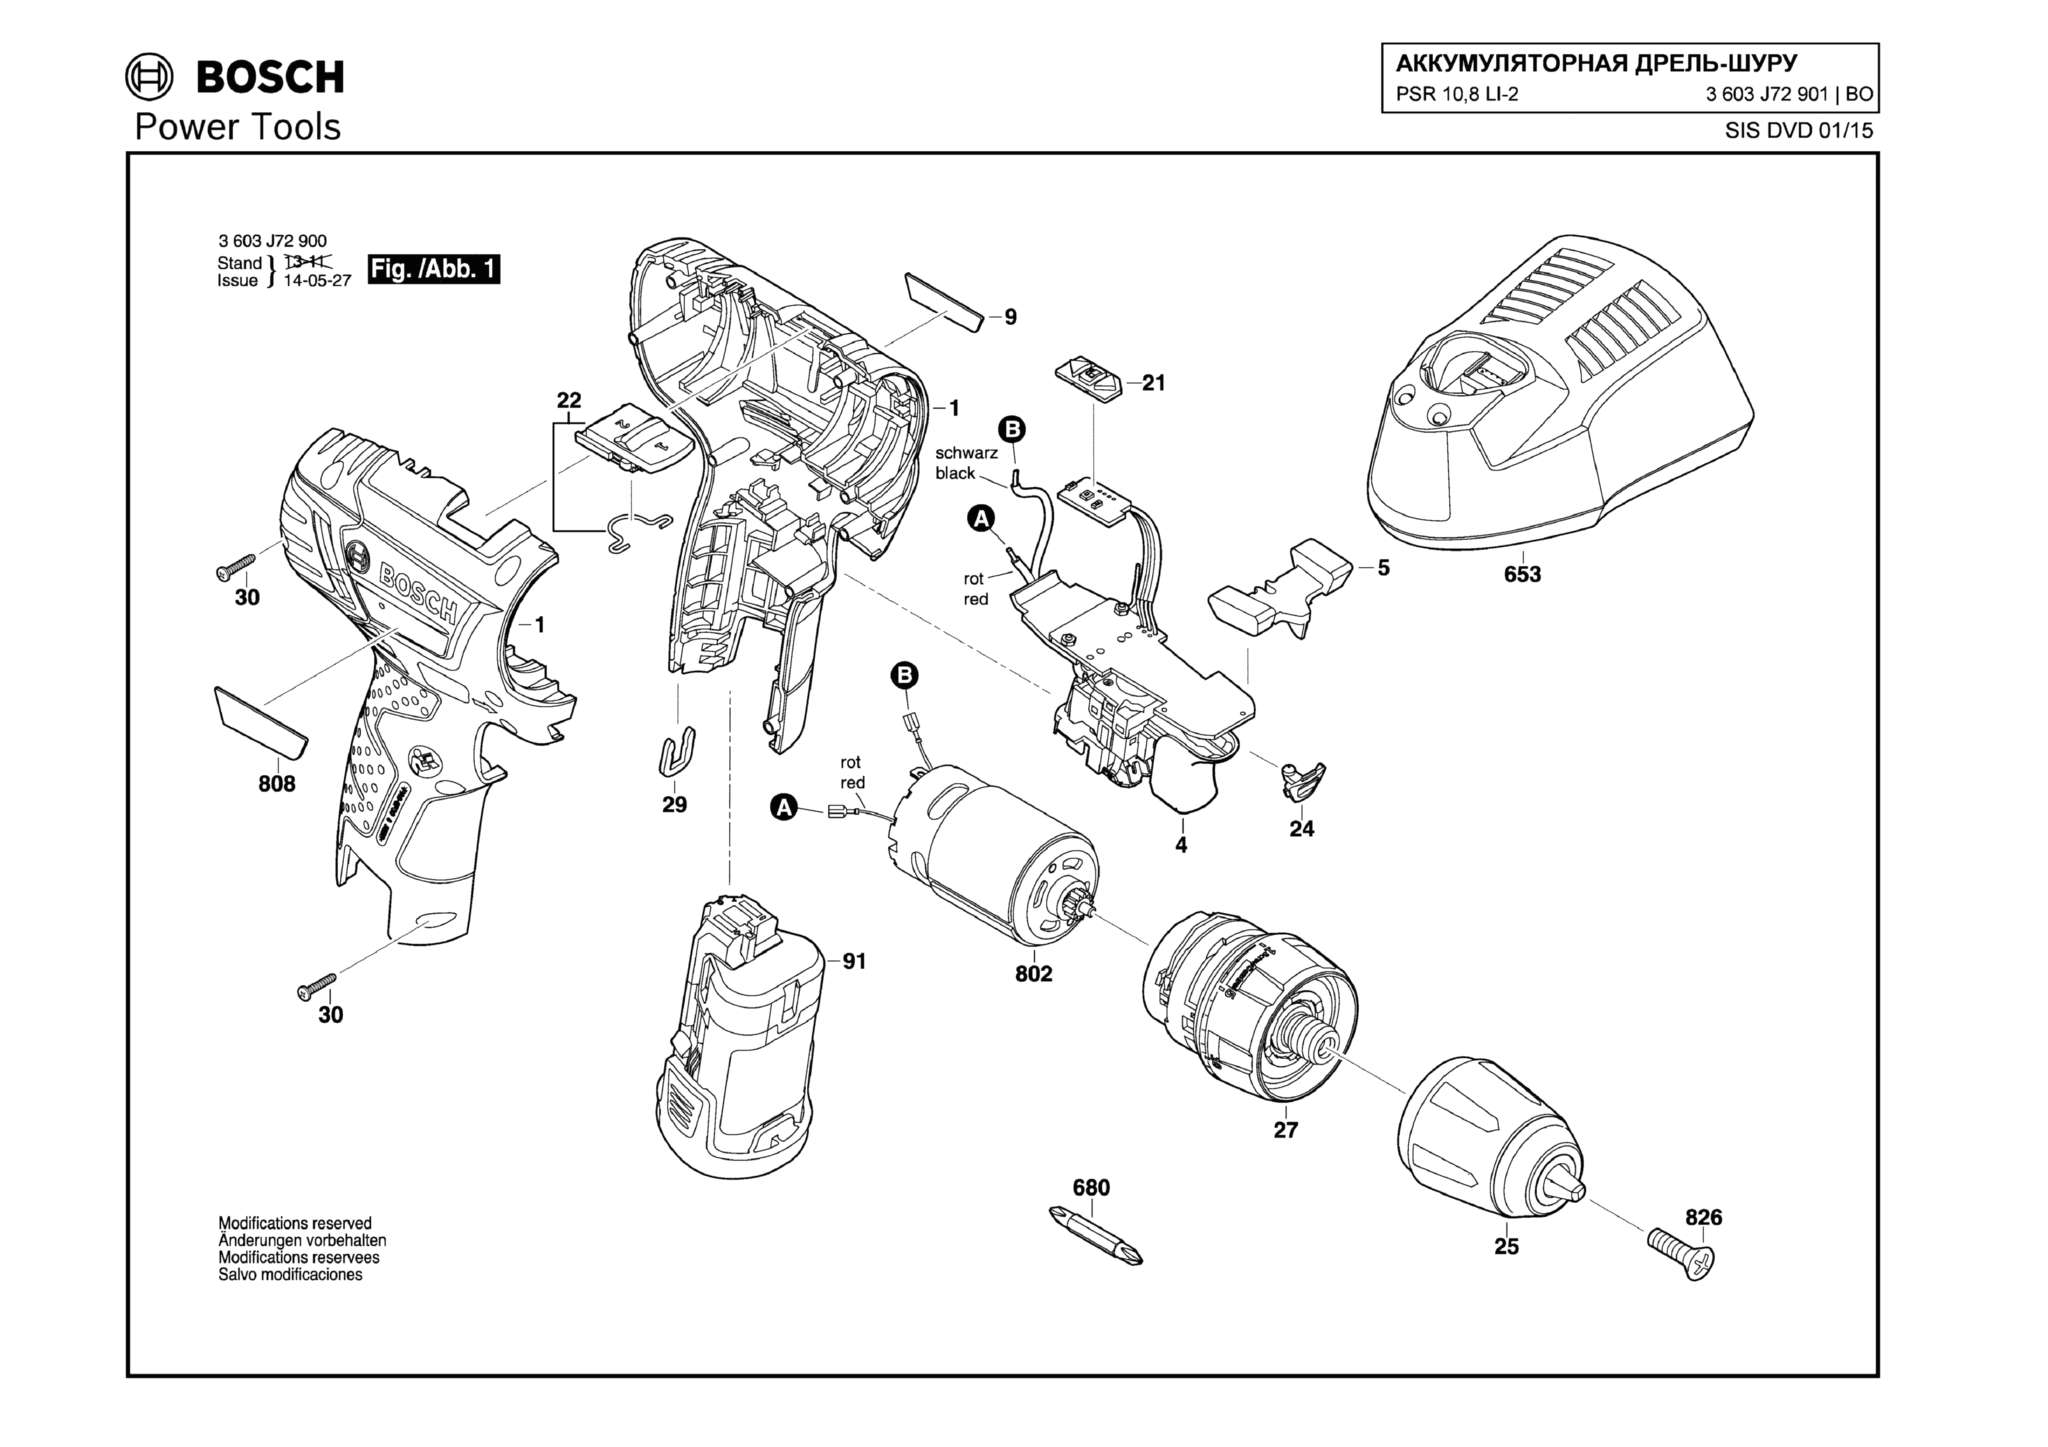 Запчасти, схема и деталировка Bosch PSR 10,8 LI-2 (ТИП 3603J72901)